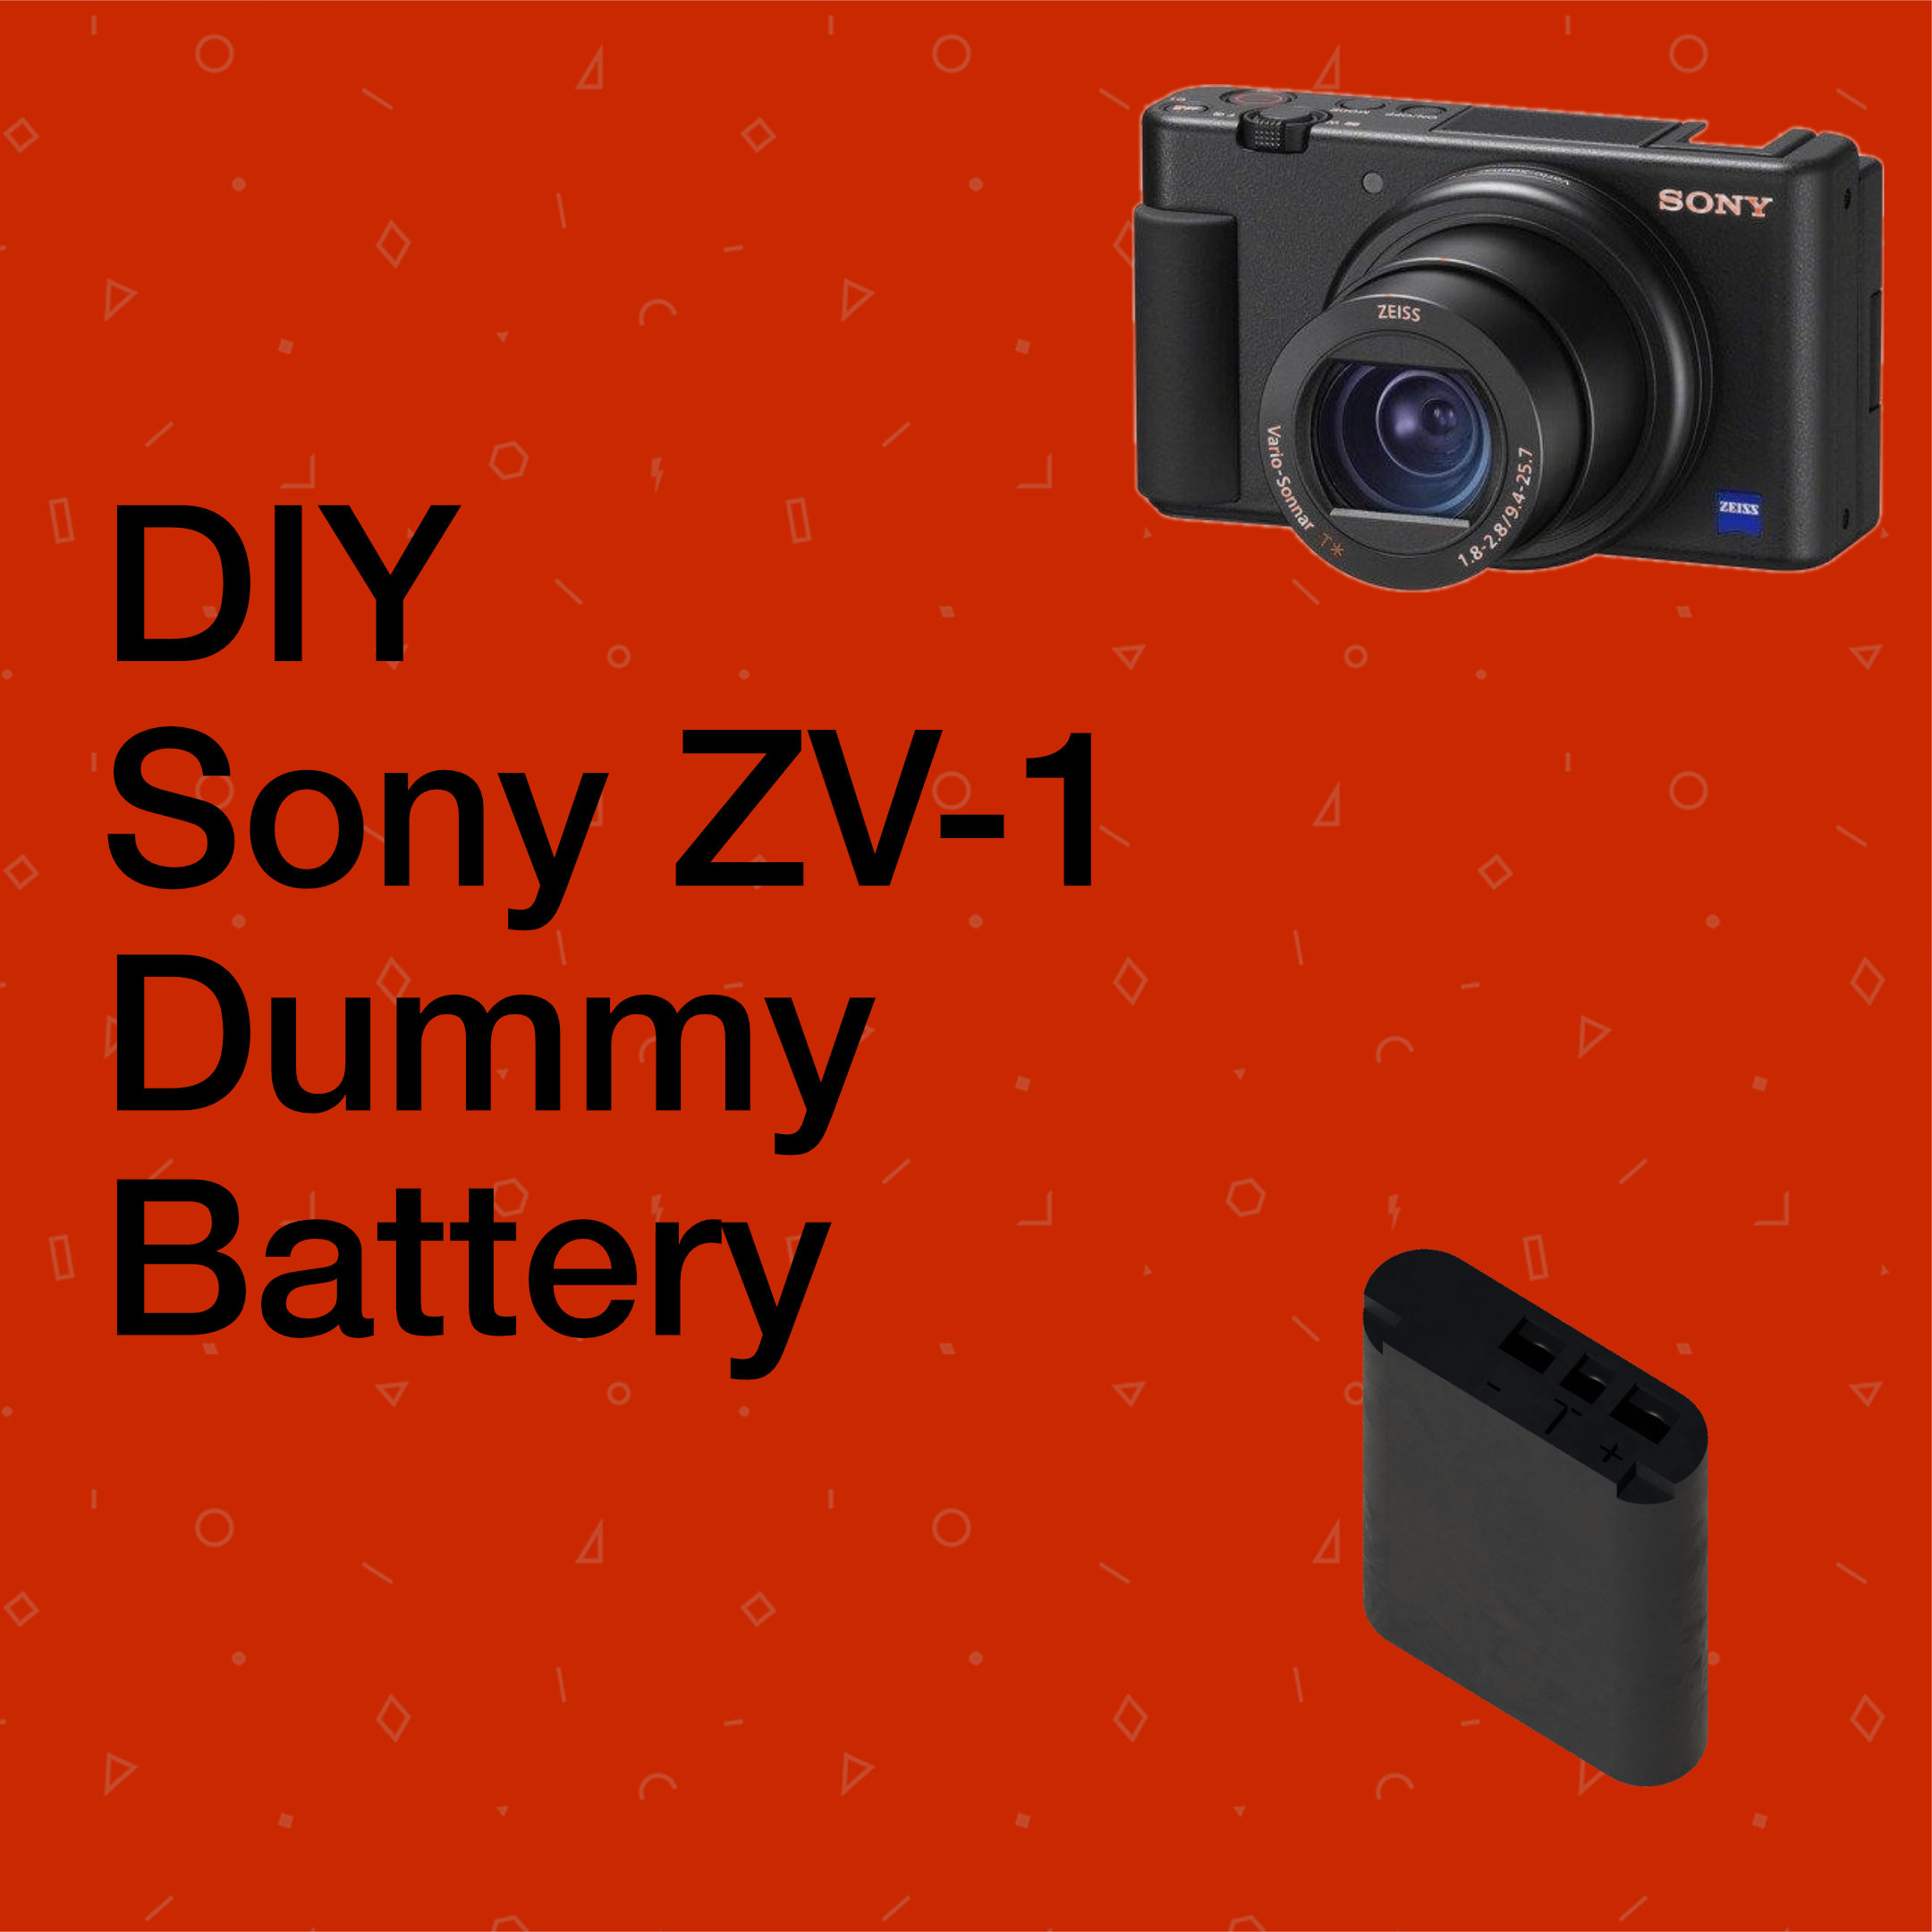 Sony ZV-1 Dummy Battery DIY